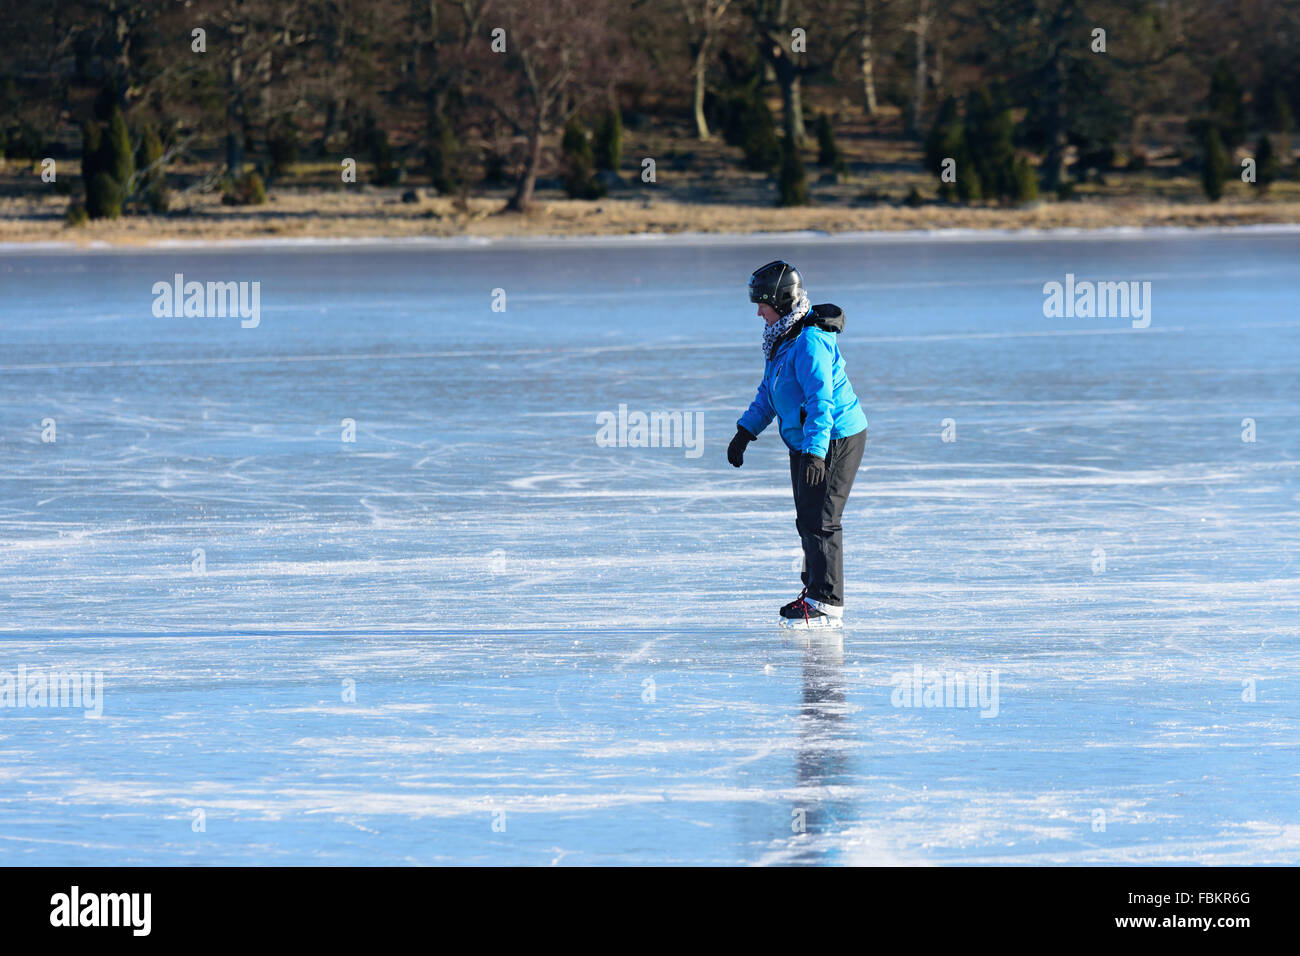 Listerby, Suecia - Enero 17, 2016: Una persona desconocida está tratando a patinar en el hielo del mar. La persona parece un poco cansado e incierto Foto de stock